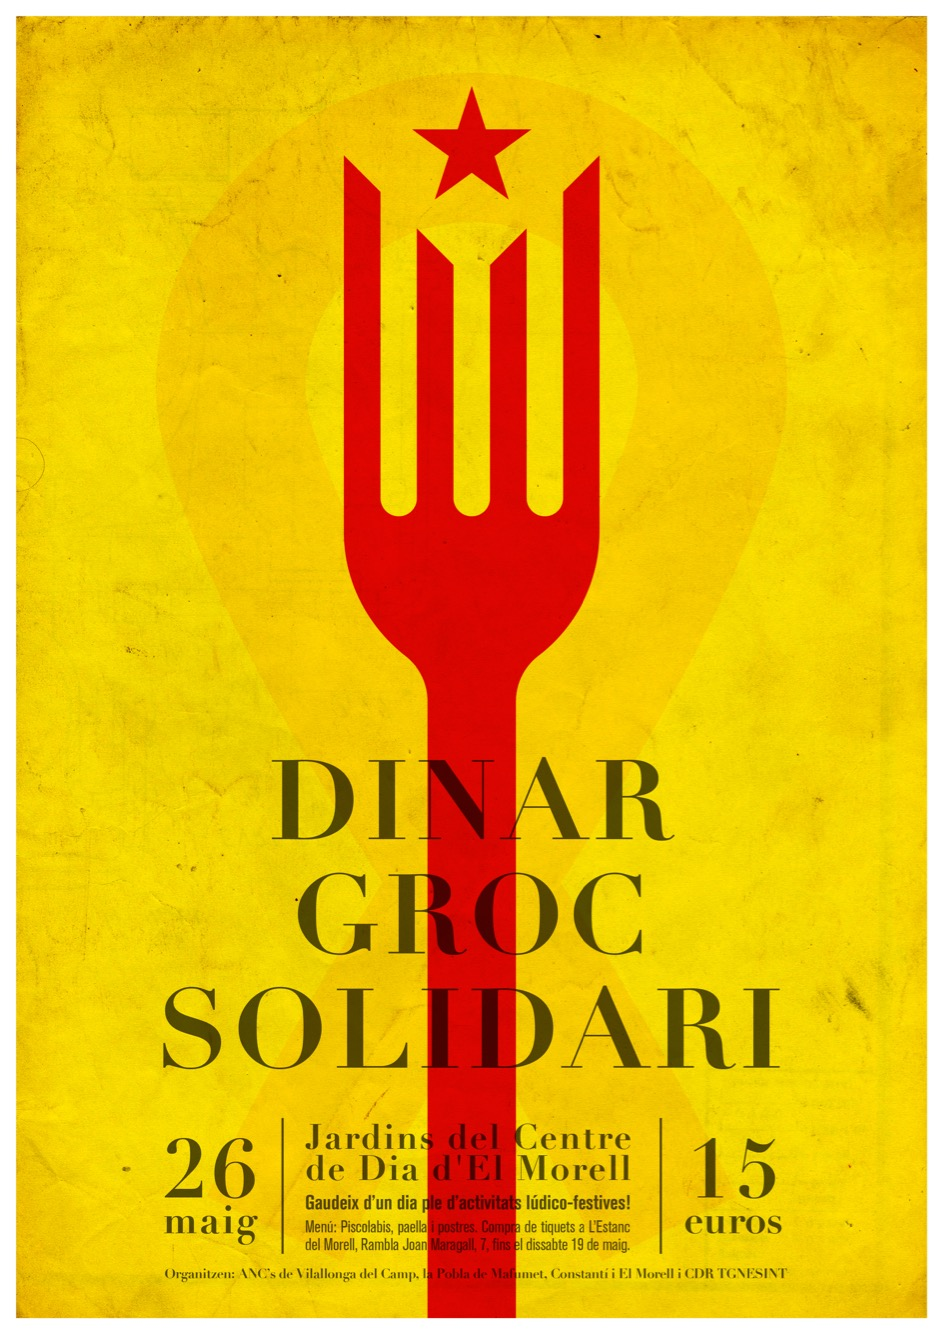 El Morell - Dinar groc solidari